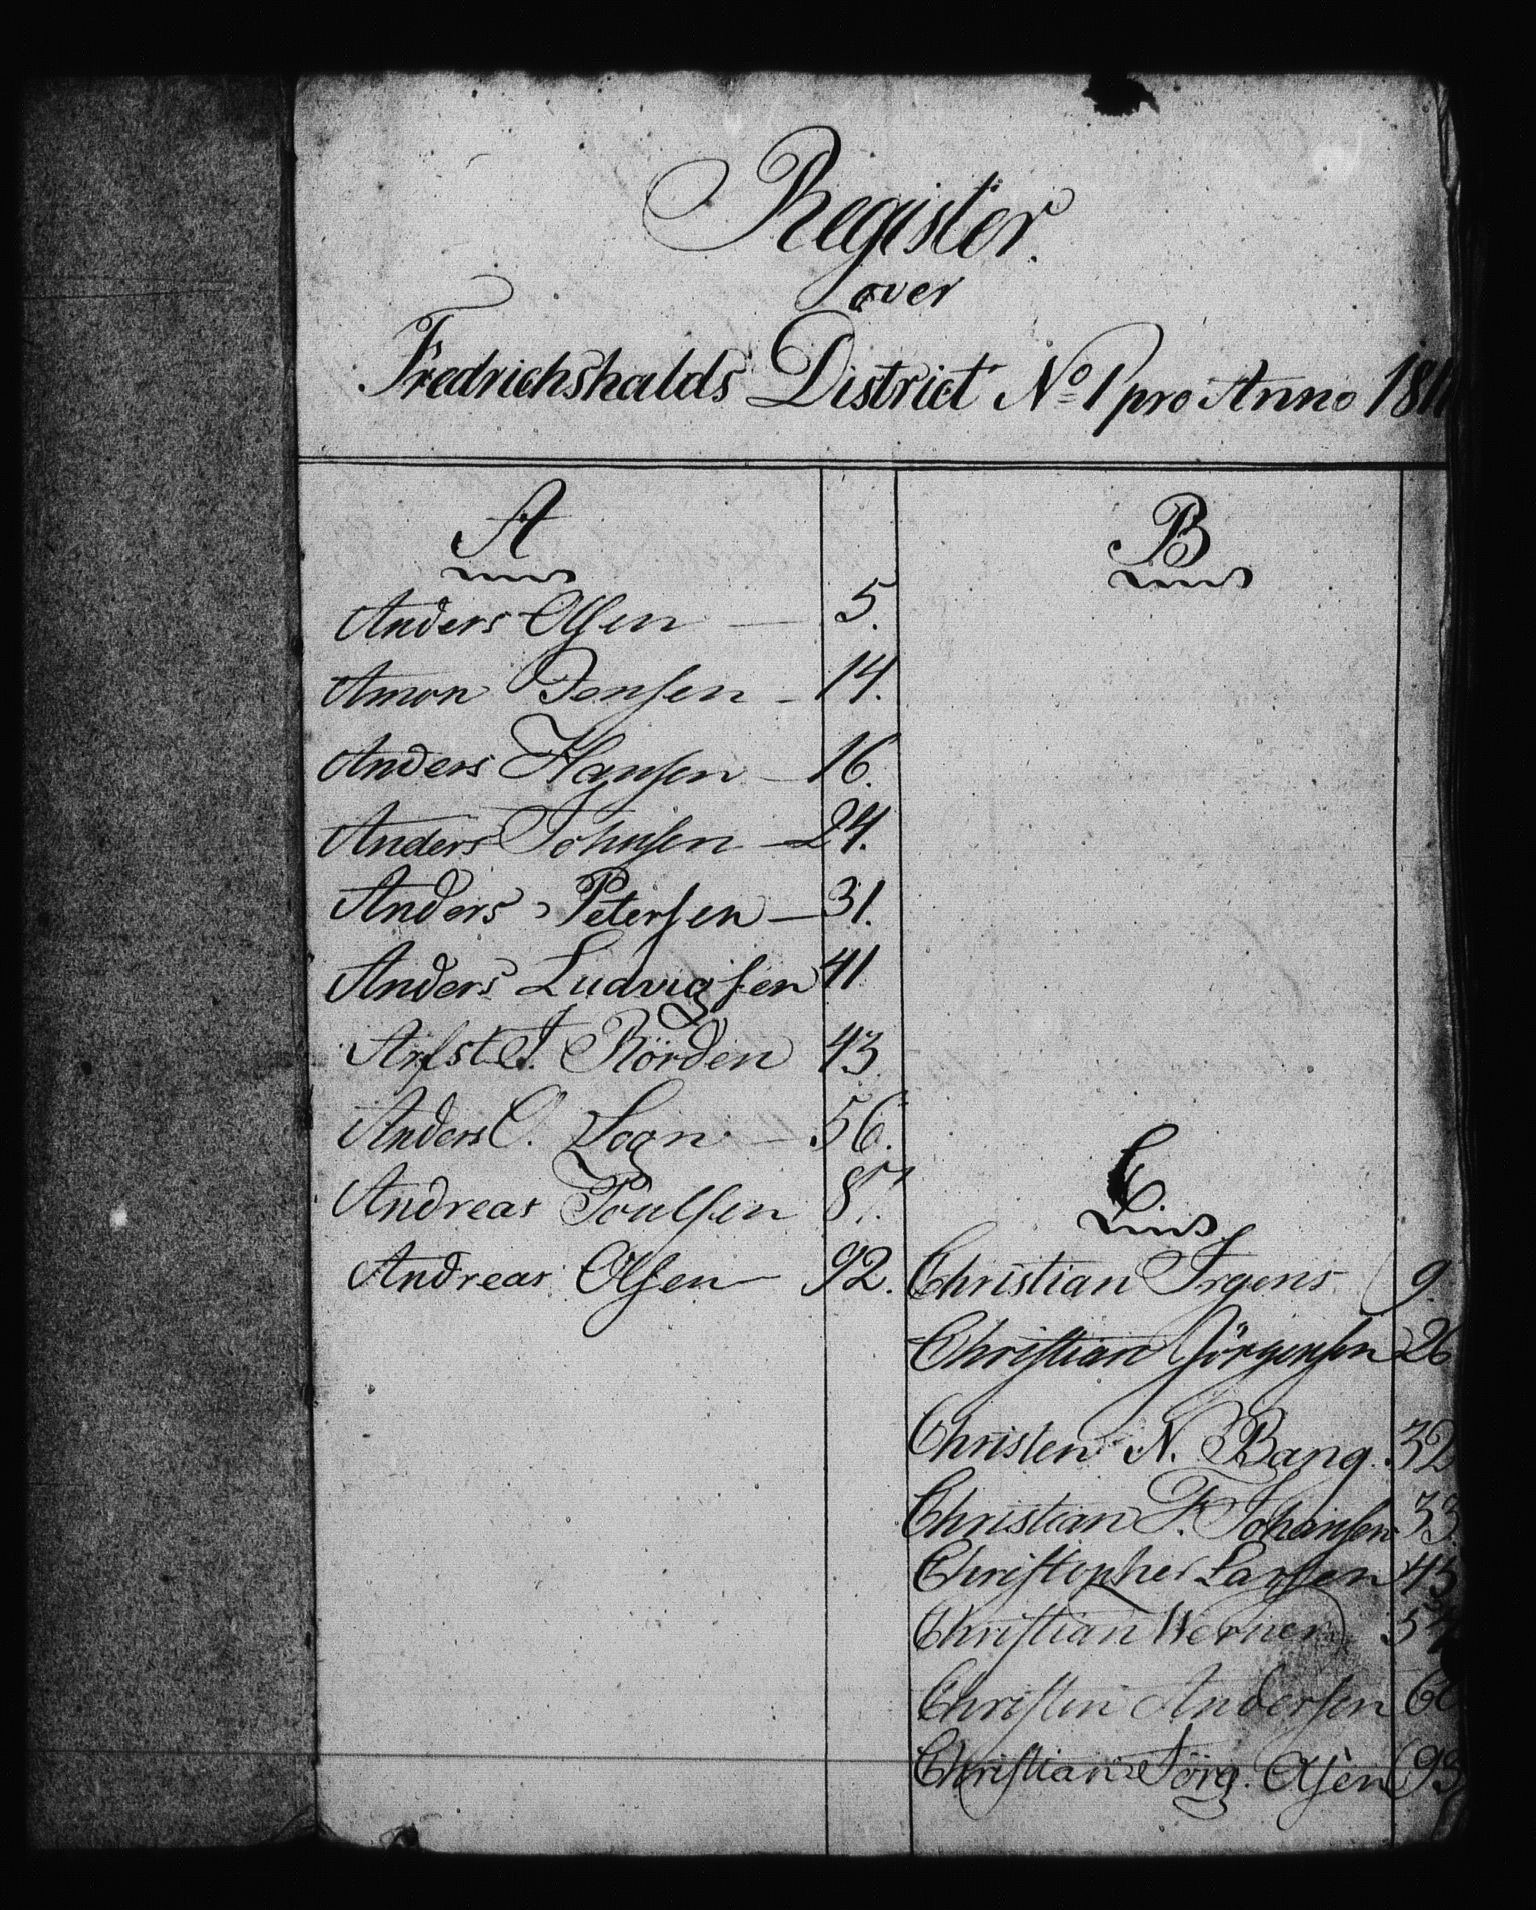 Sjøetaten, RA/EA-3110/F/L0204: Fredrikshalds distrikt, bind 1, 1811